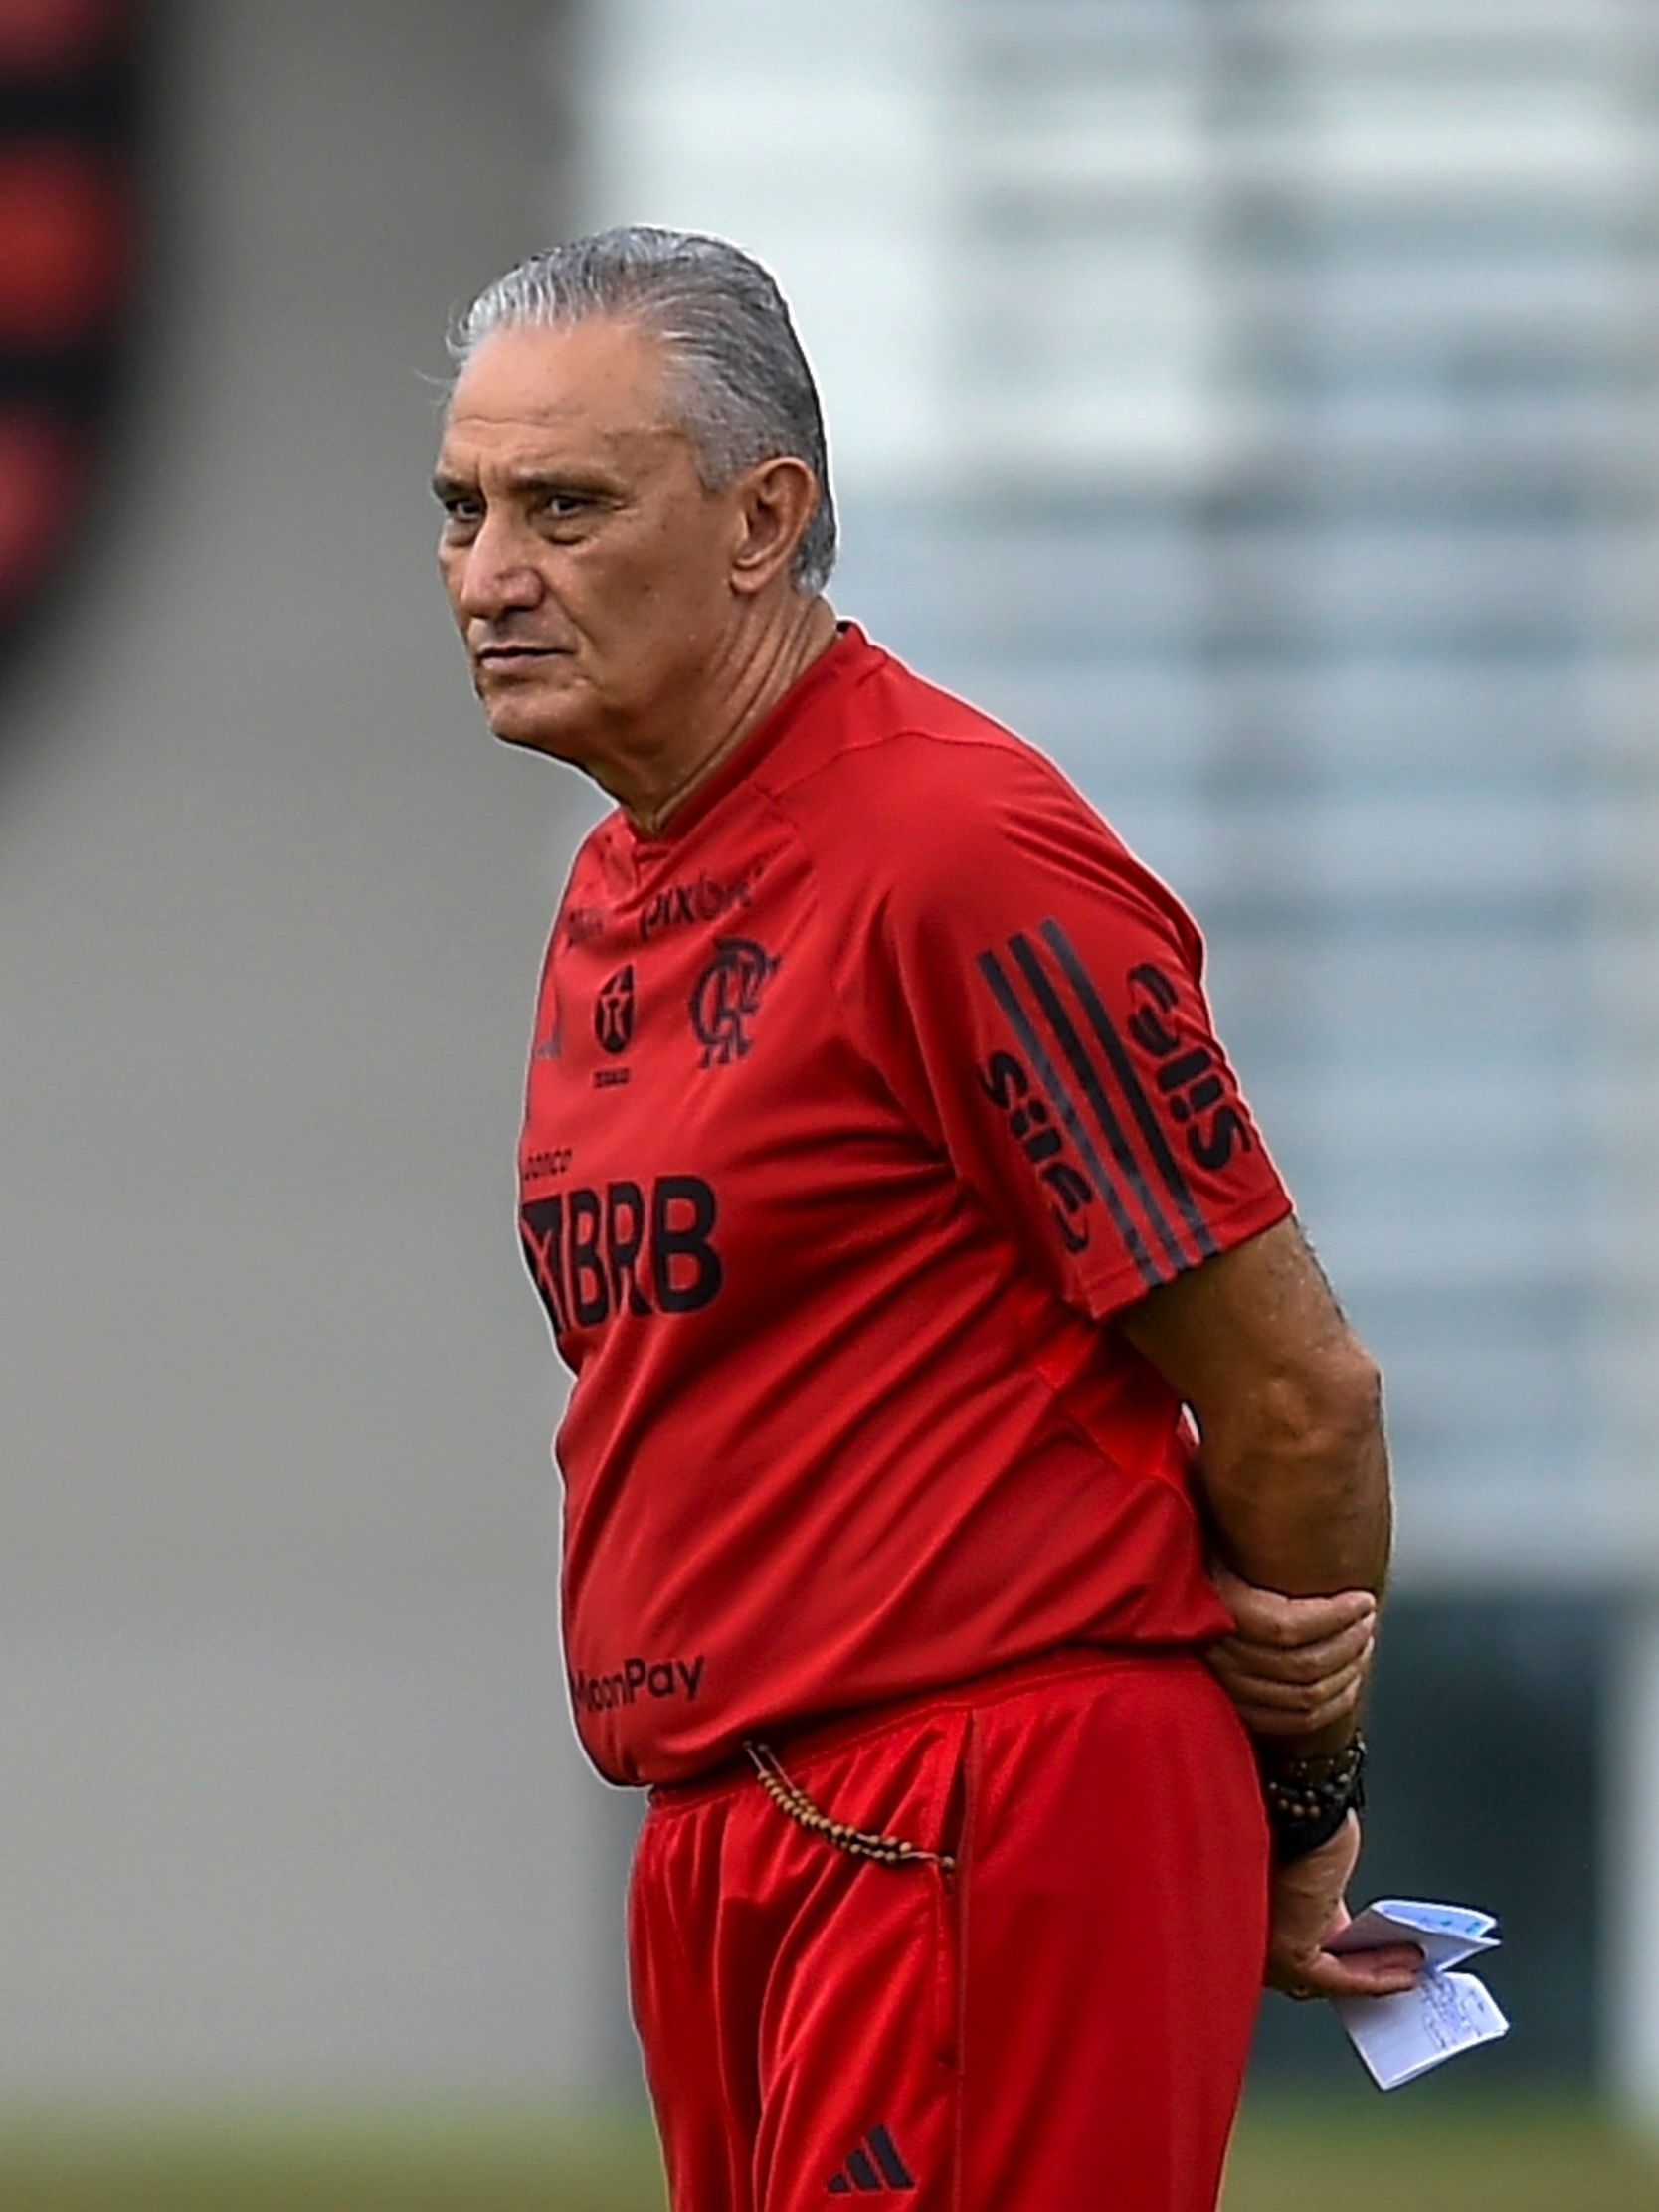 81mi: A Contratação de novo atacante para Tite no Flamengo